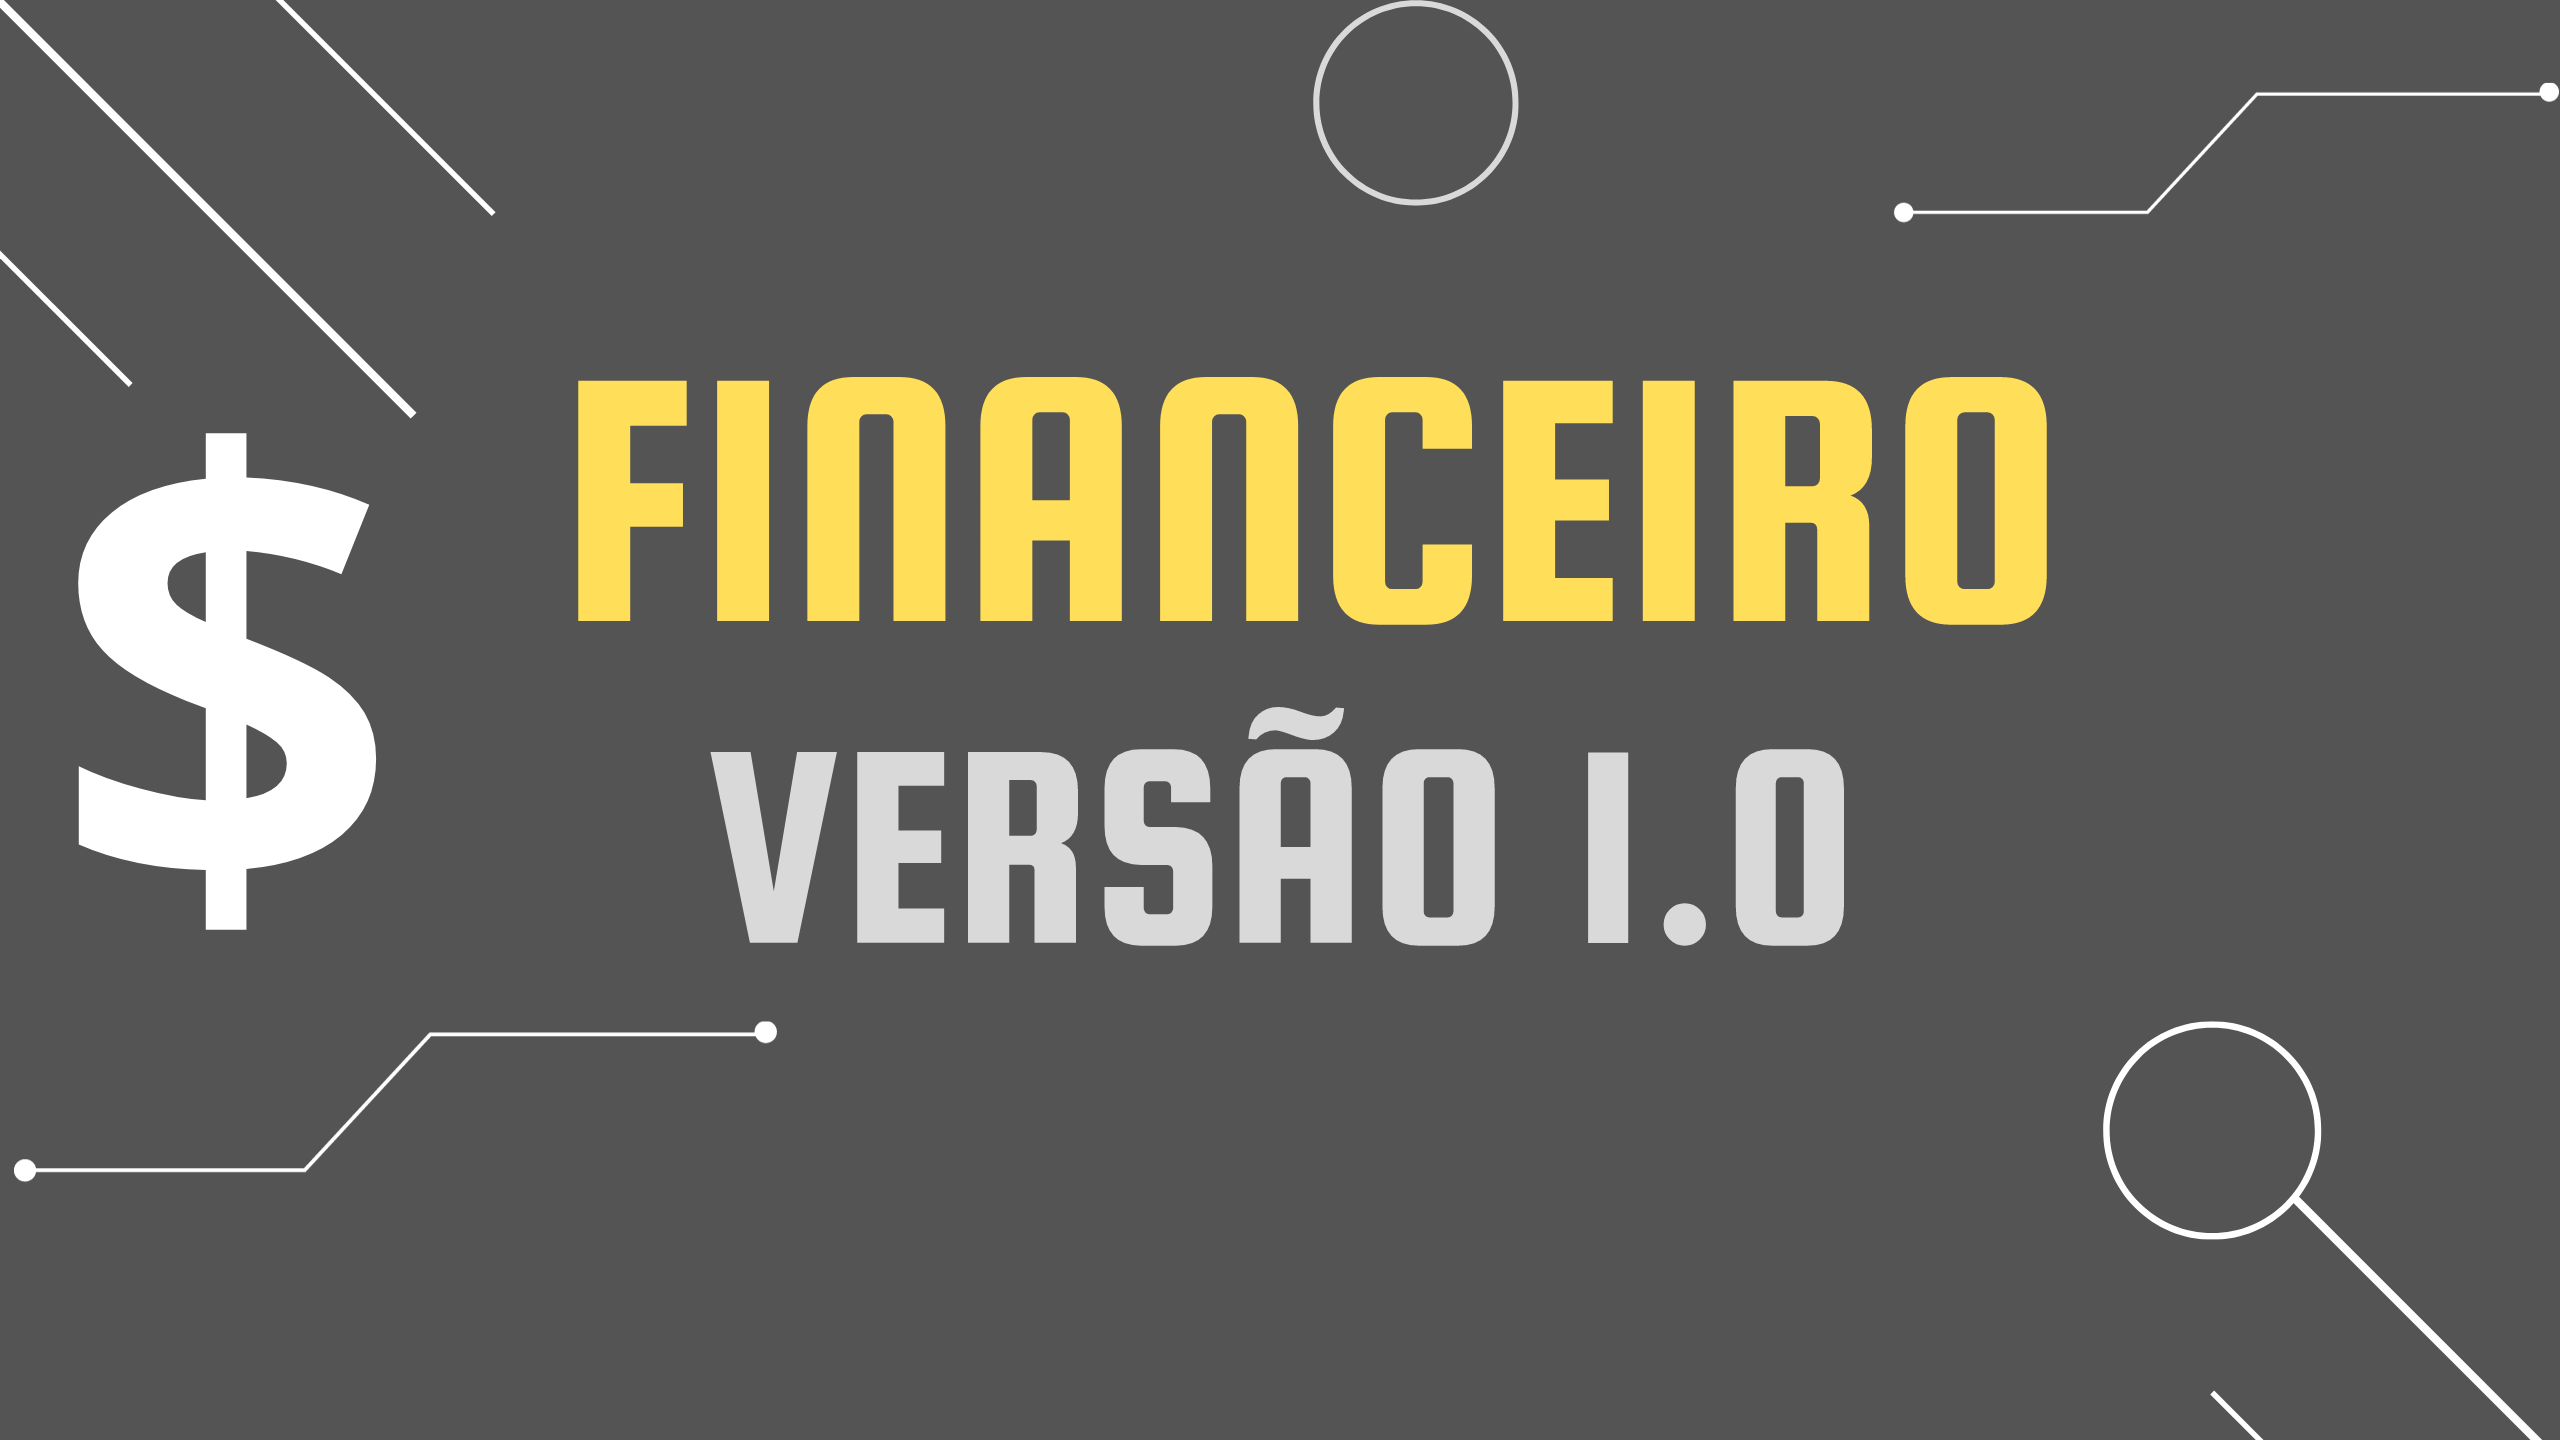 Financeiro Versão 1.0